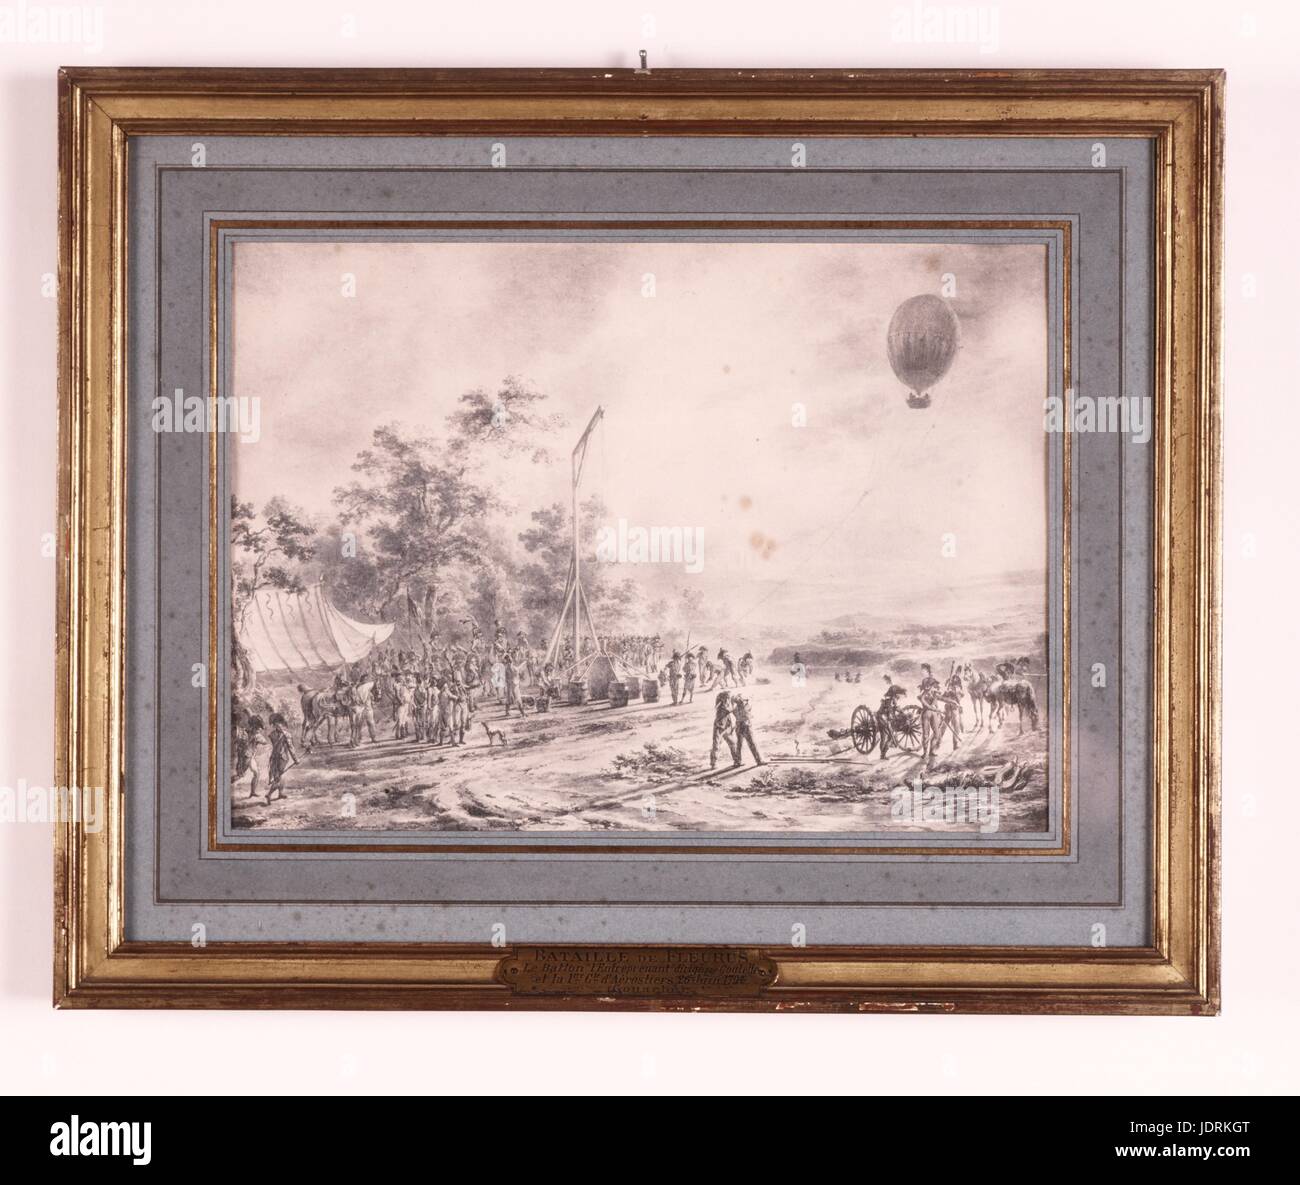 26 juin 1794 : première utilisation d'un ballon de renseignement